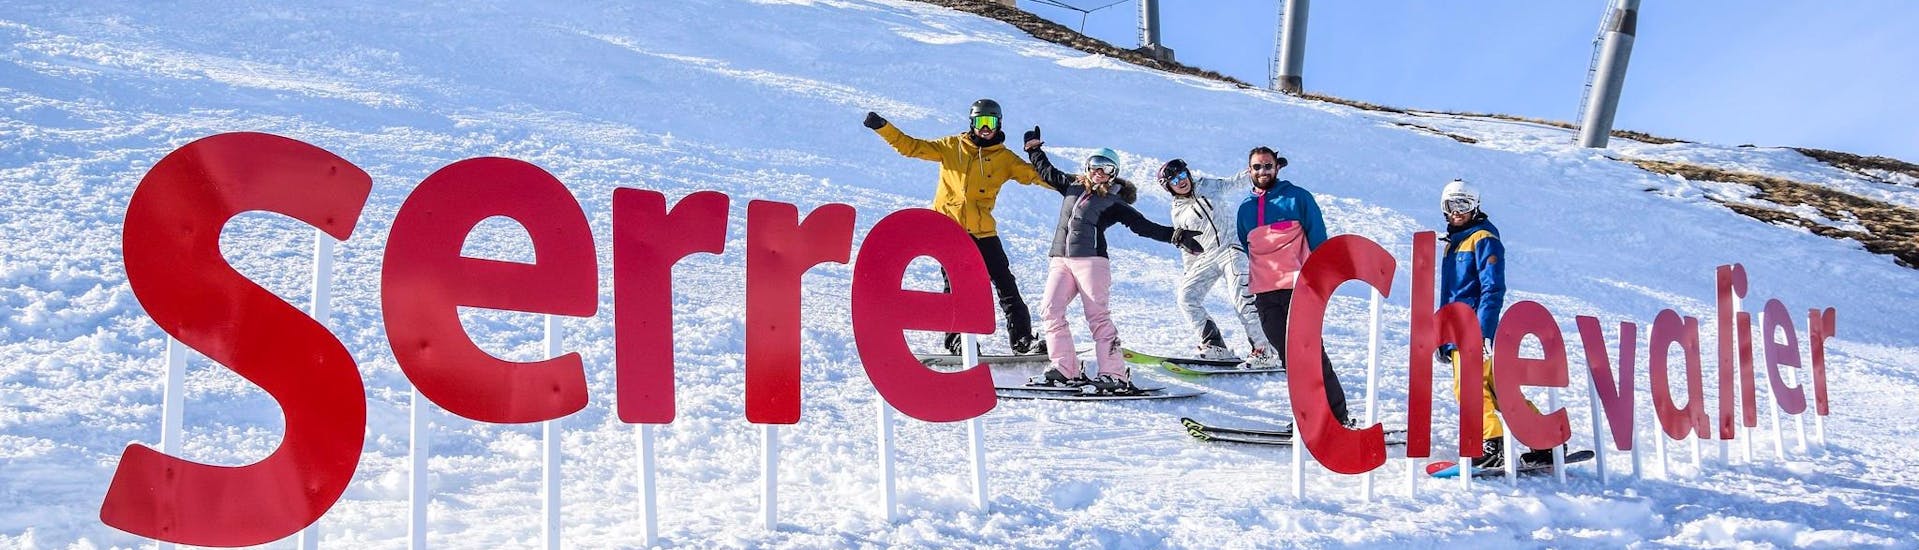 Adultes et enfants skiant dans la station de ski de Serre Chevalier.